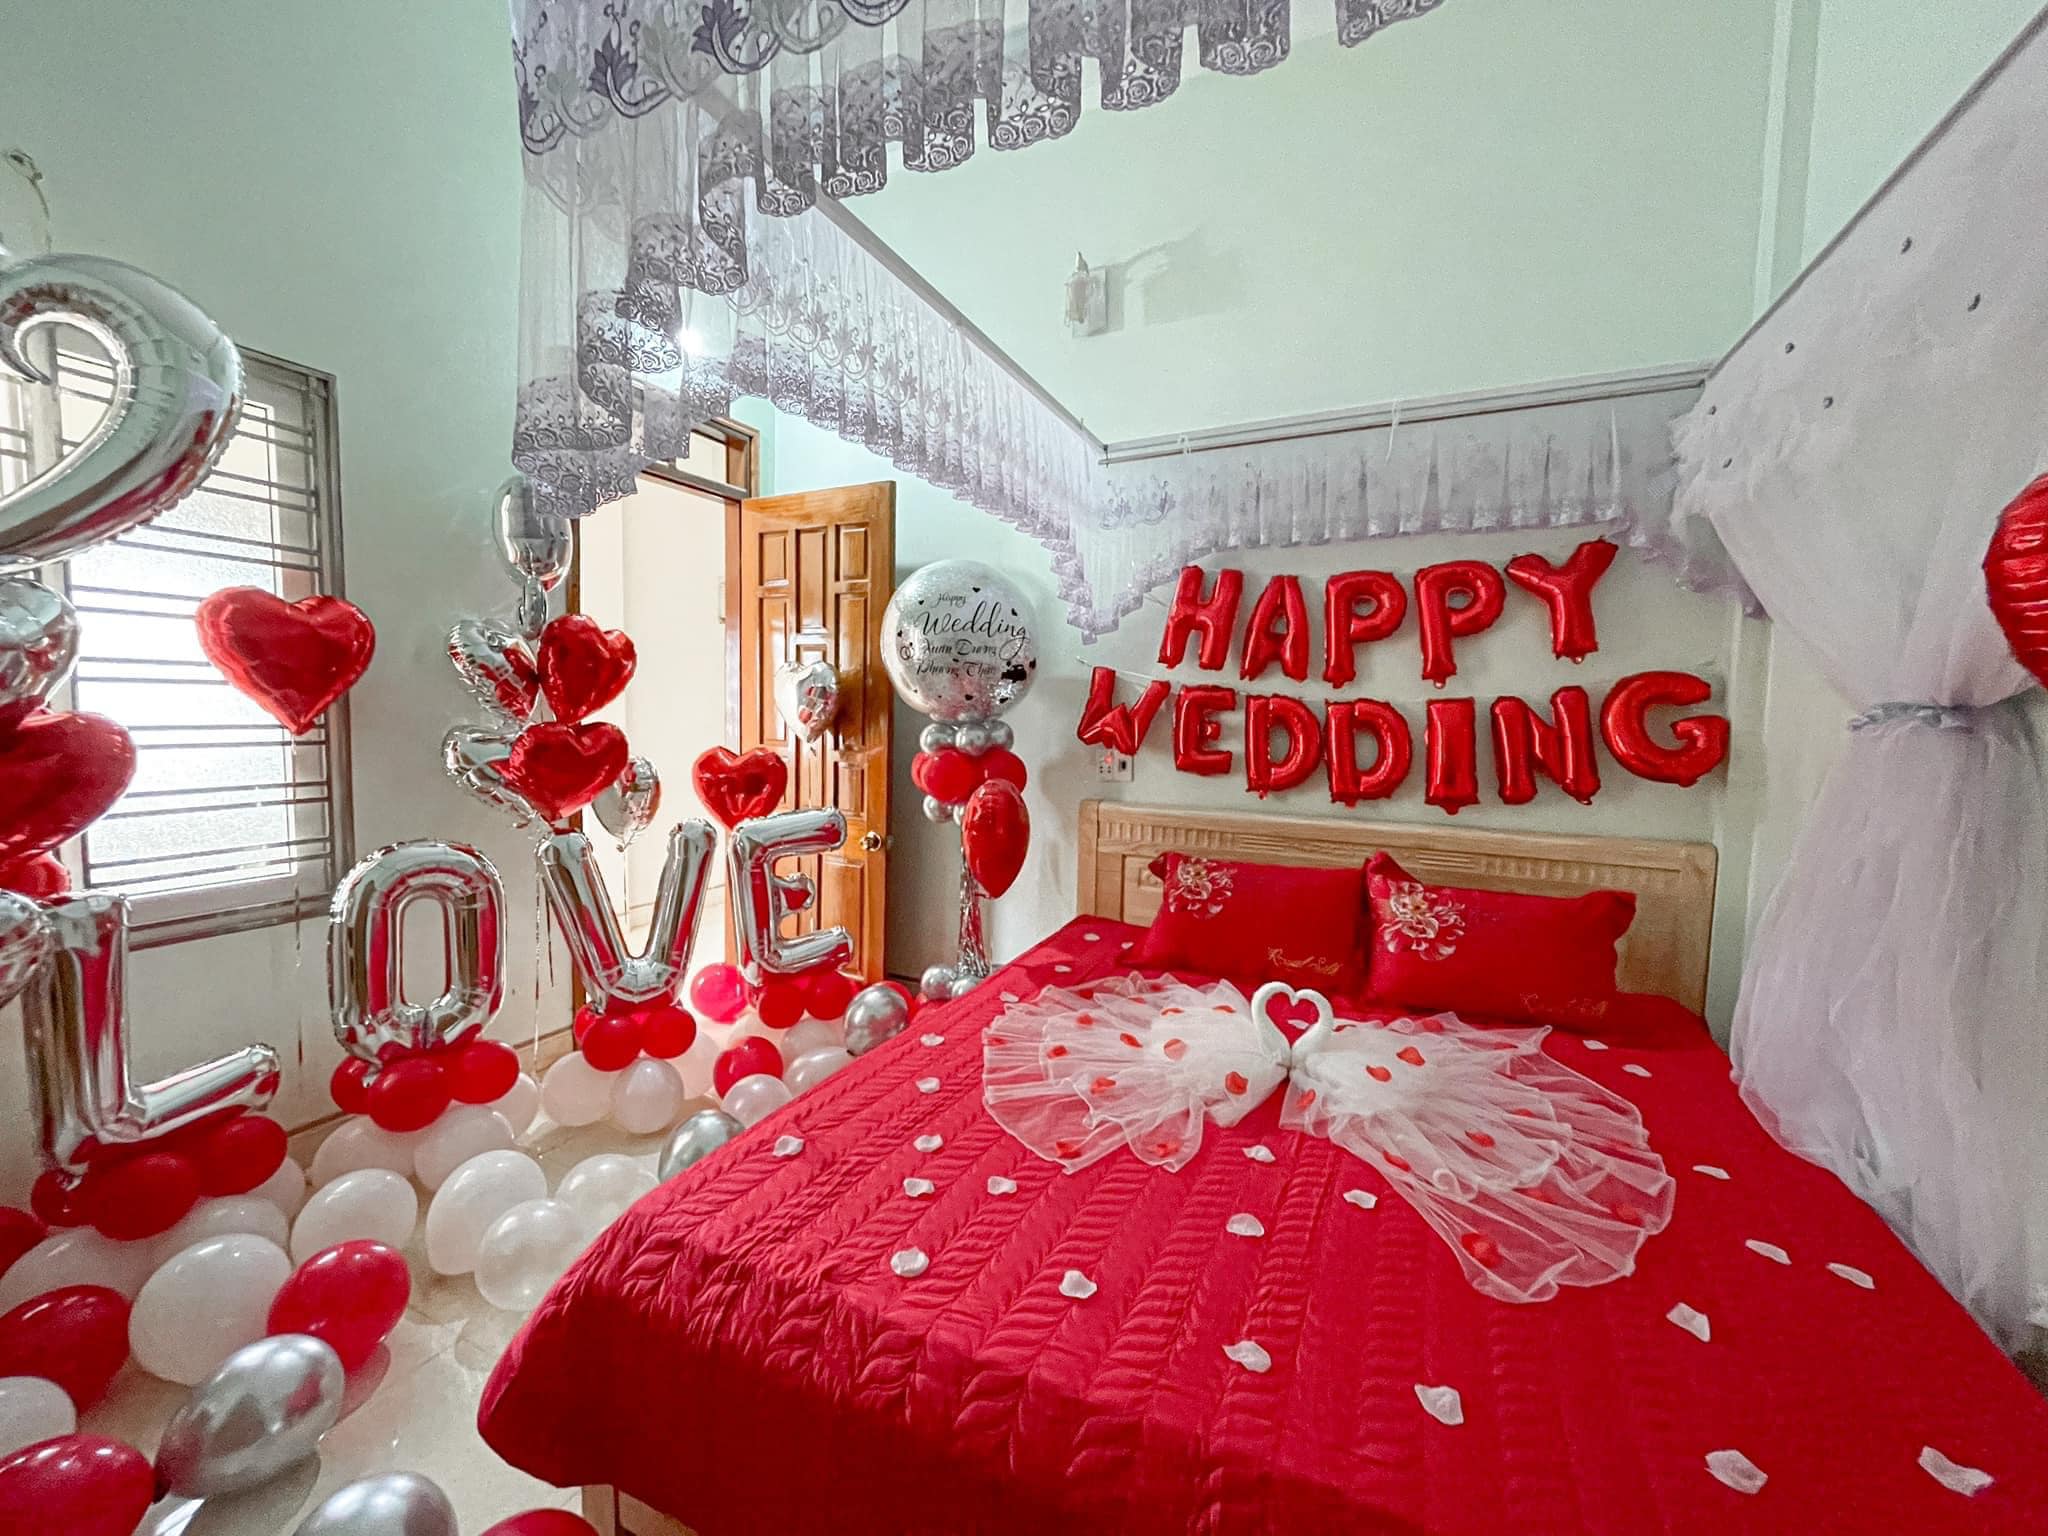 Trang trí phòng cưới giá rẻ quận Hai Bà Trưng - Chill decor